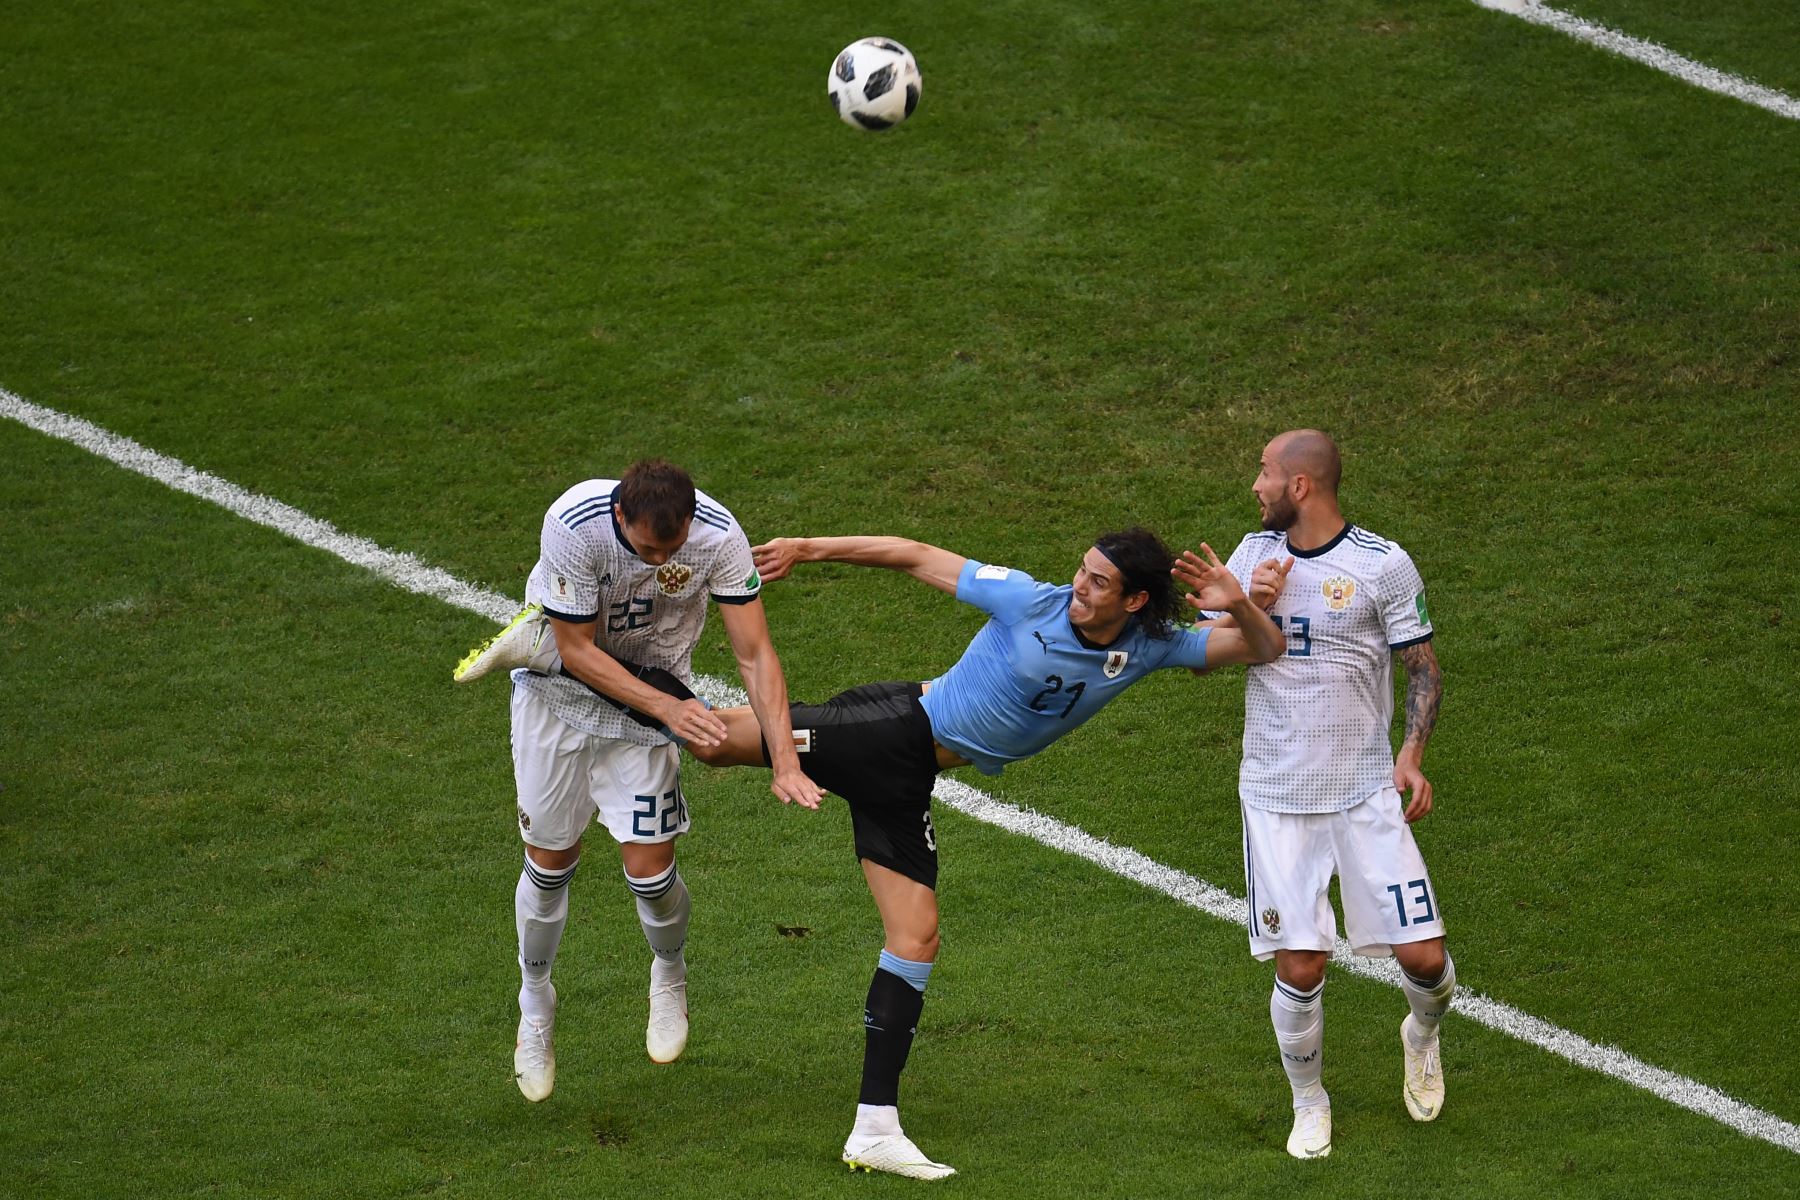 El delantero uruguayo Edinson Cavani (C) pelea con el delantero ruso Artem Dzyuba (L) y el defensor ruso Fyodor Kudryashov (R) durante el partido de fútbol Rusia A del Grupo A de la Copa Mundial 2018 entre Uruguay y Rusia en el Samara Arena de Samara el 25 de junio de 2018. / AFP